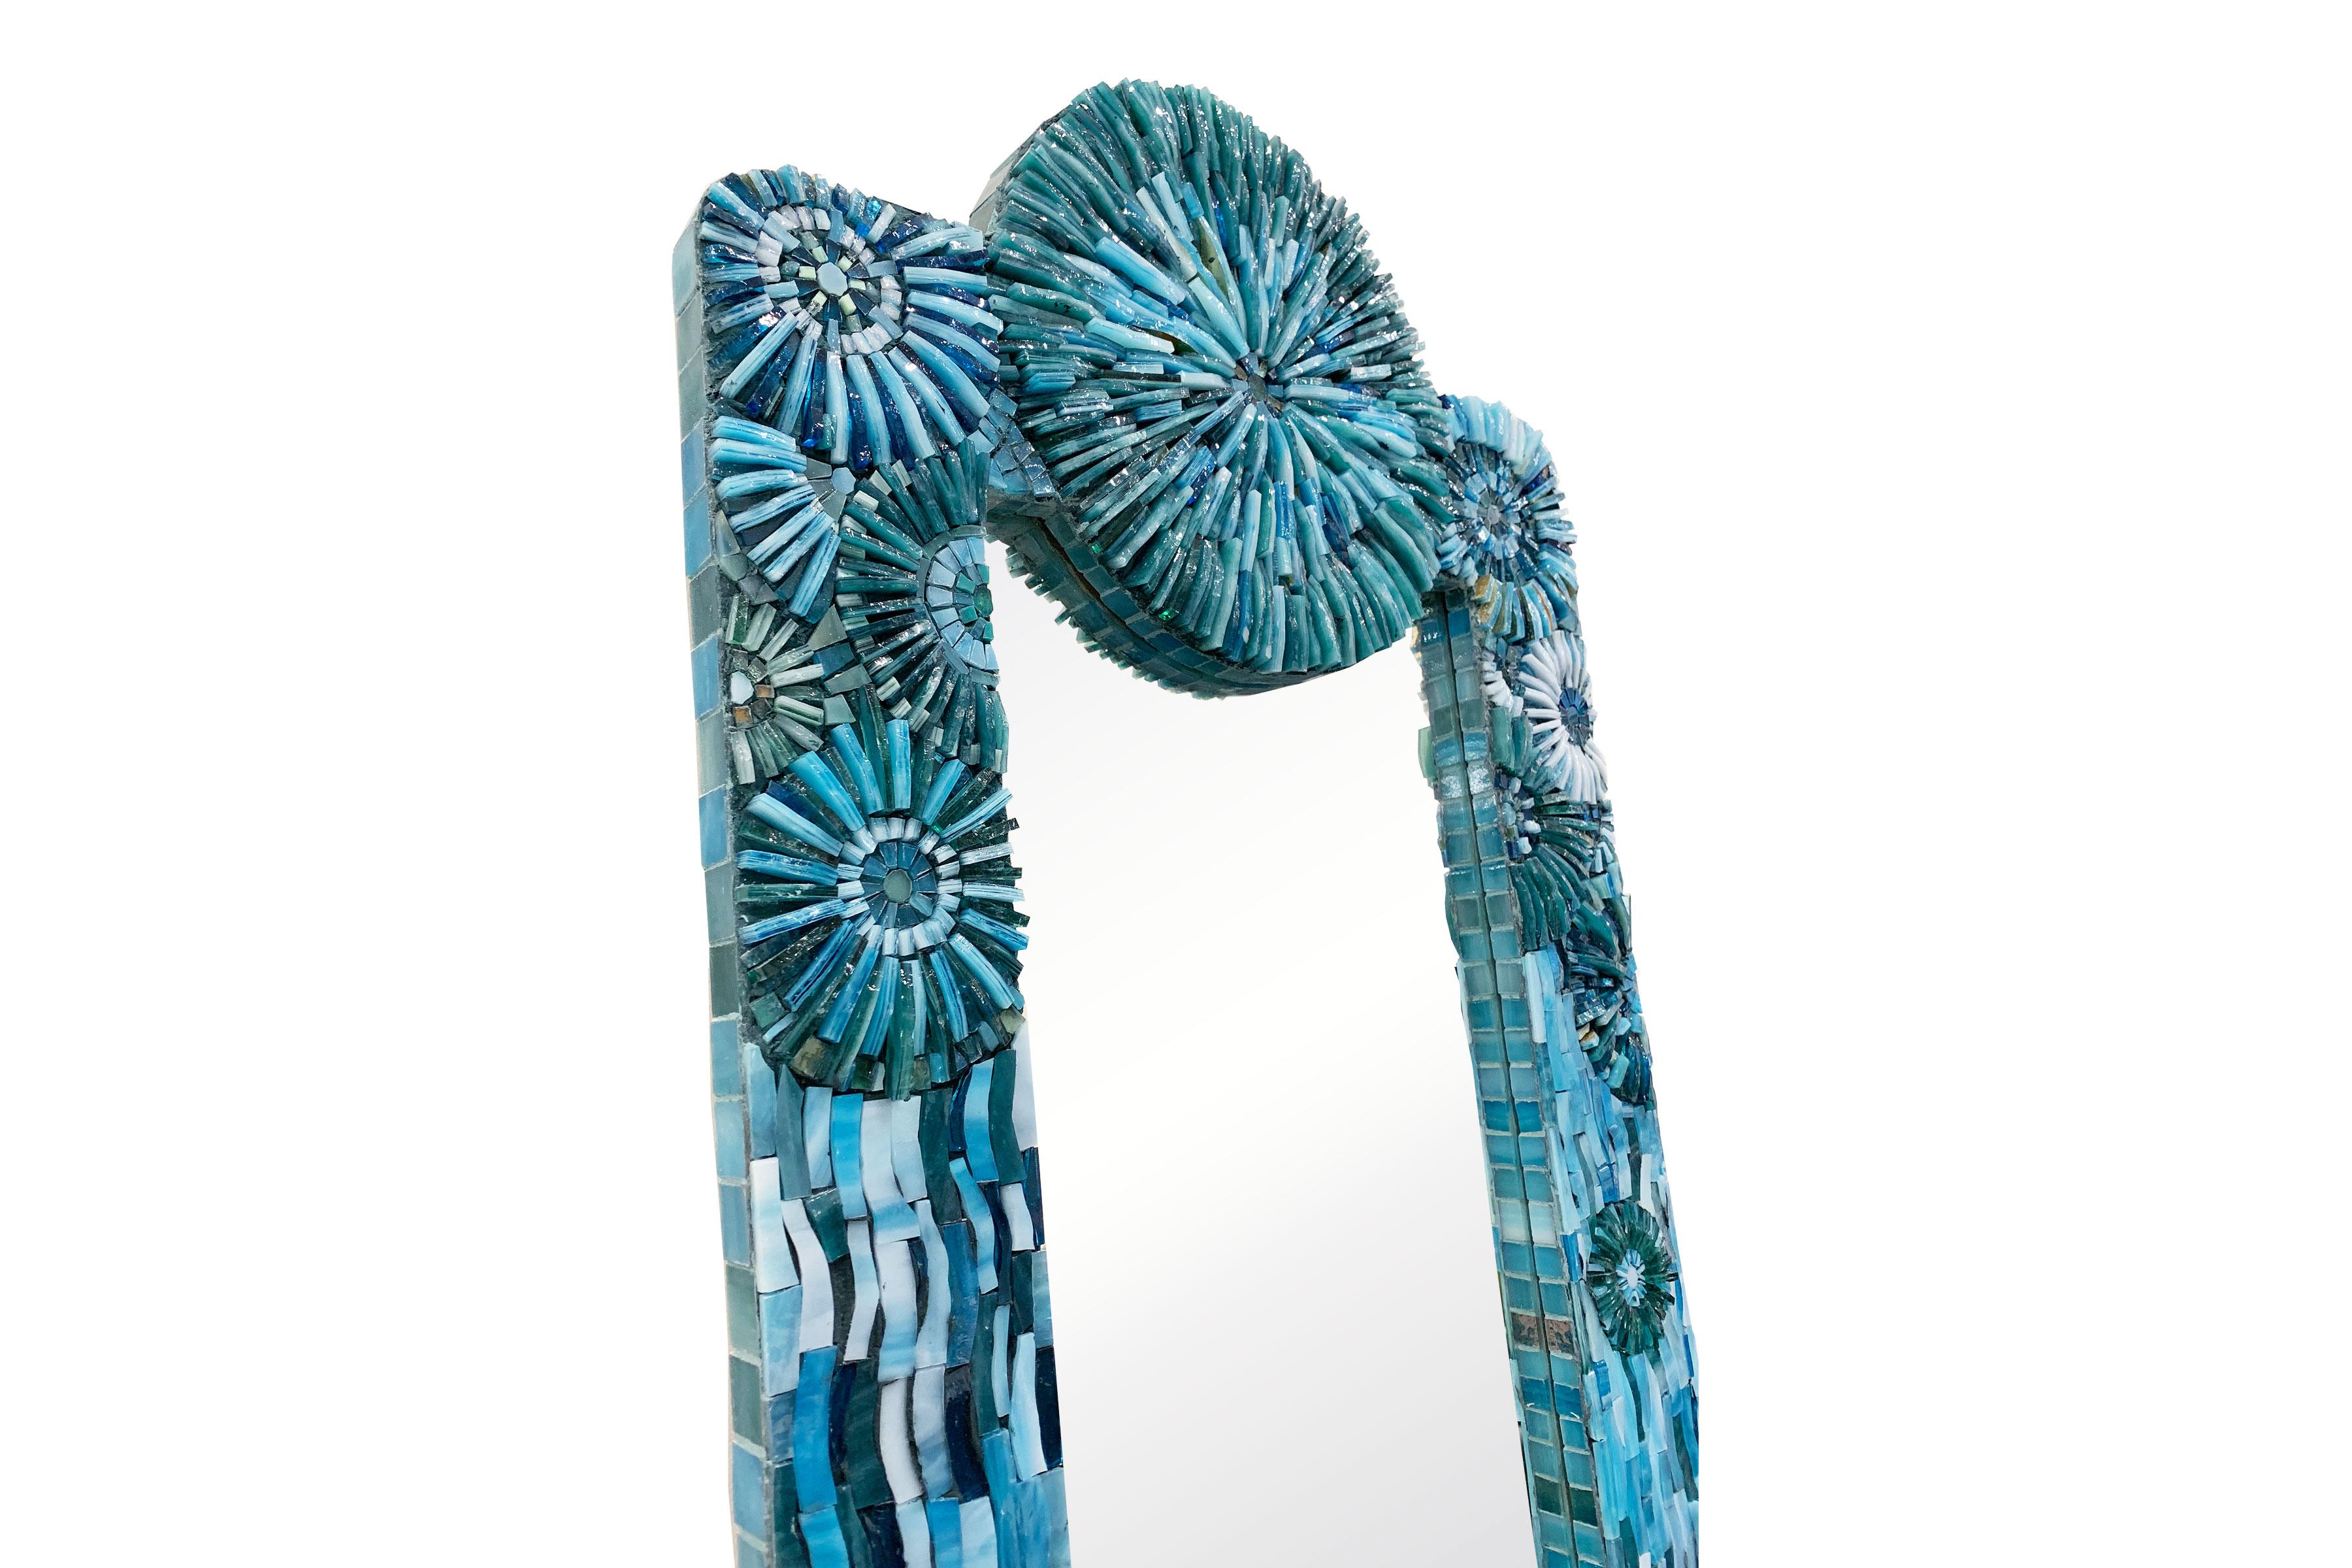 Le miroir rectangulaire blossom d'Ercole Home a une bordure de 3''.
Des mosaïques de verre taillées à la main dans différentes nuances de turquoise décorent la surface en motifs de fleurs et d'éclats.
Des tailles et des finitions personnalisées